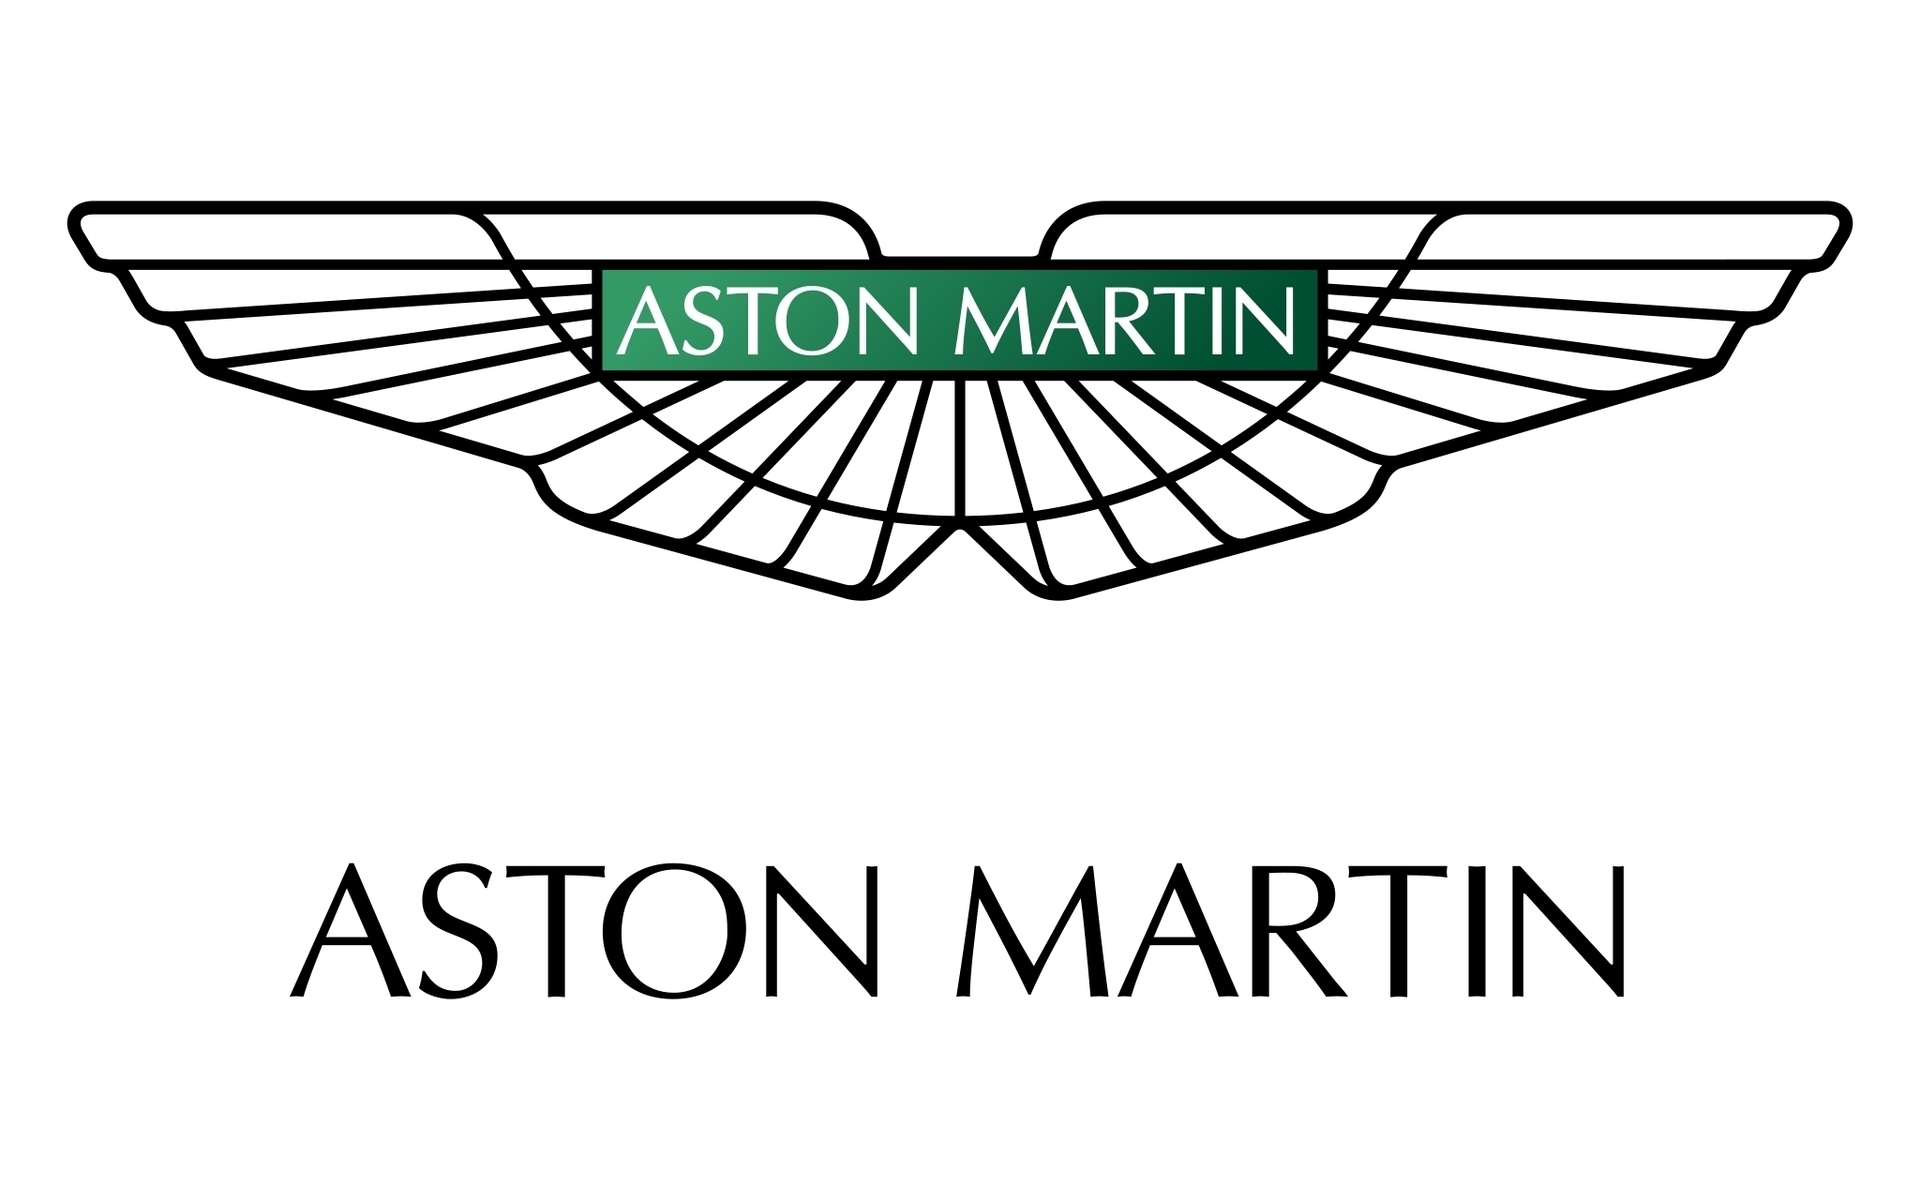 Aston Martin Logo for 1920 x 1200 widescreen resolution